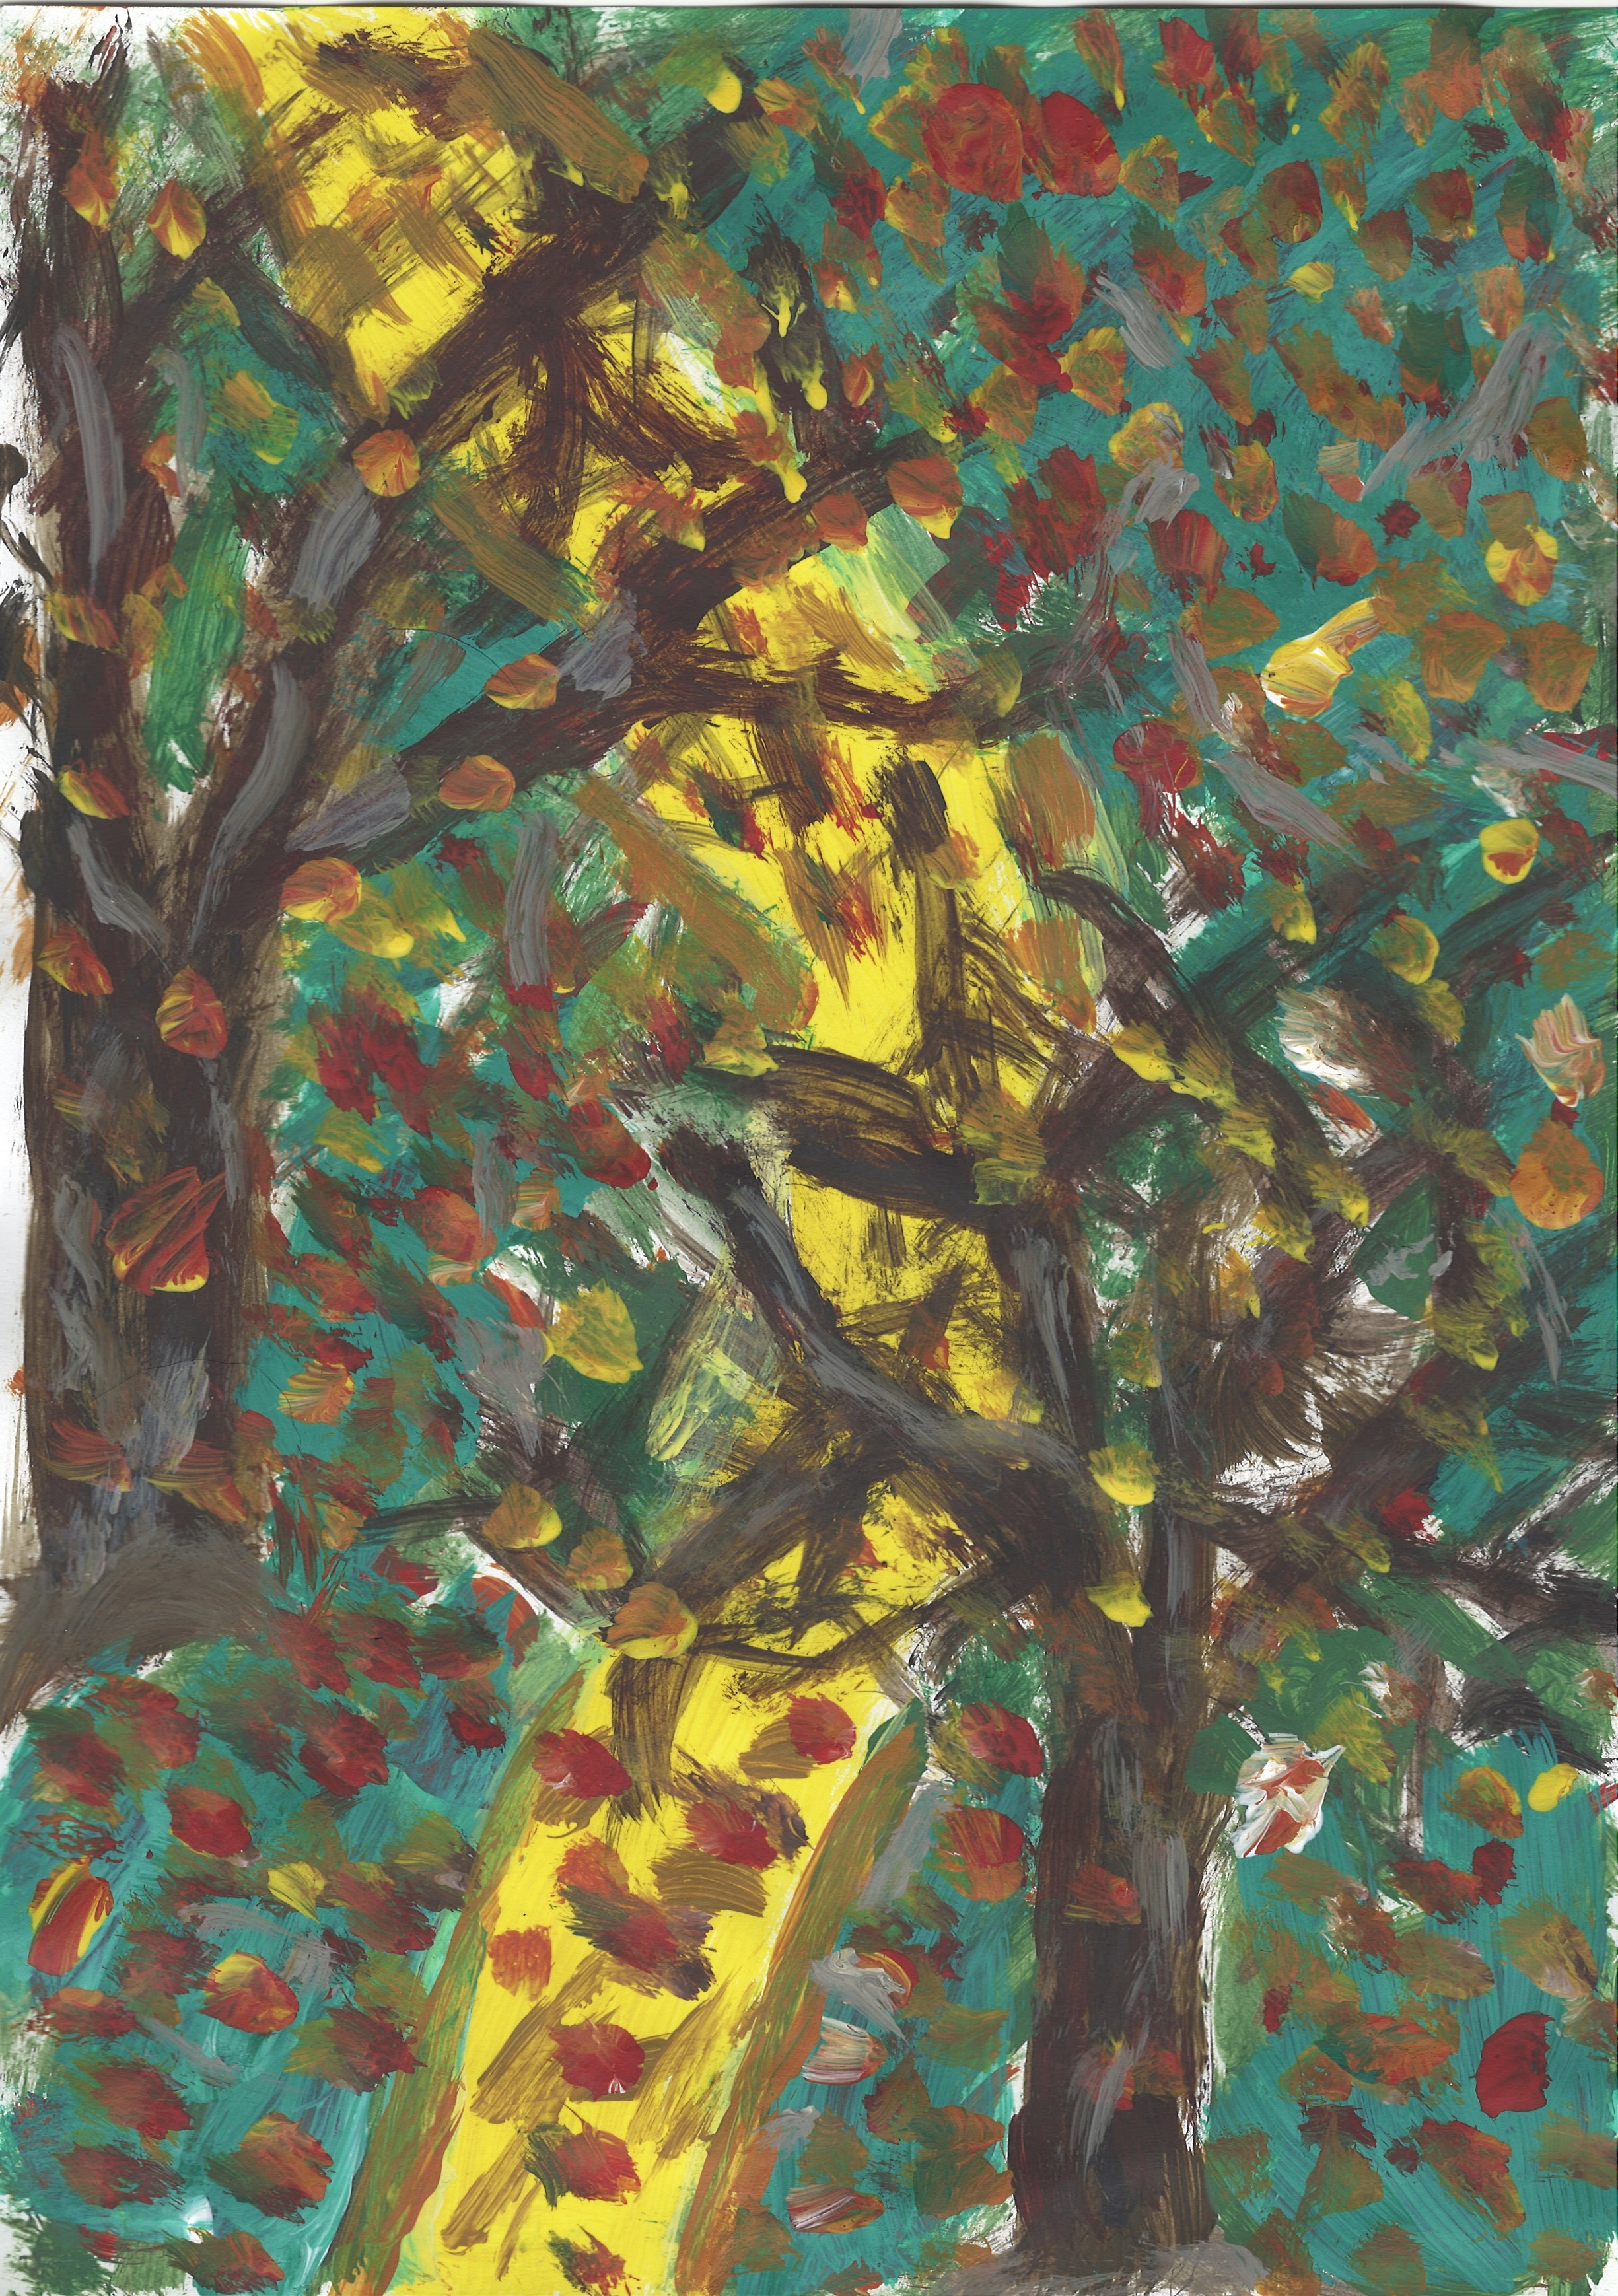 Praca plastyczna wykonana farbami za pomocą barwnych plam przedstawia abstrakcyjne wyobrażenie jesiennych drzew z opadającymi liśćmi. 